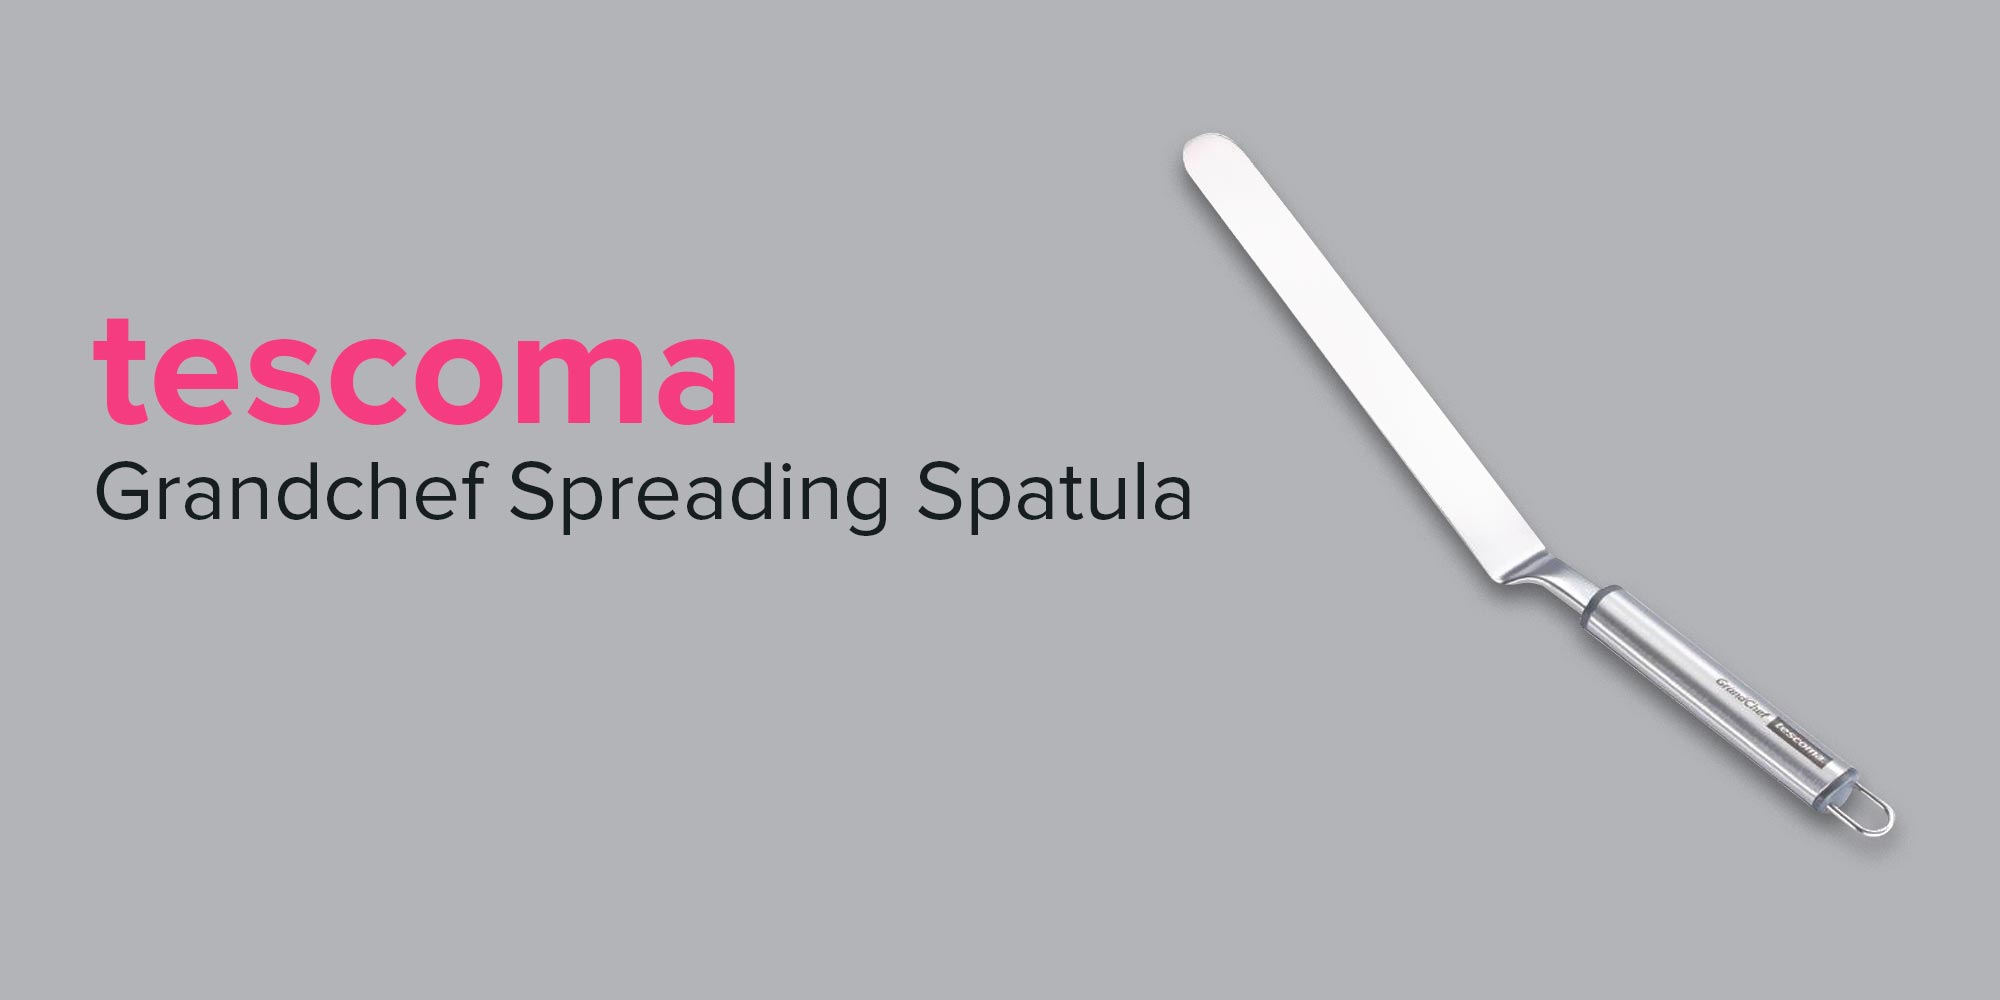 Tescoma Spreading Spatula Grandchef